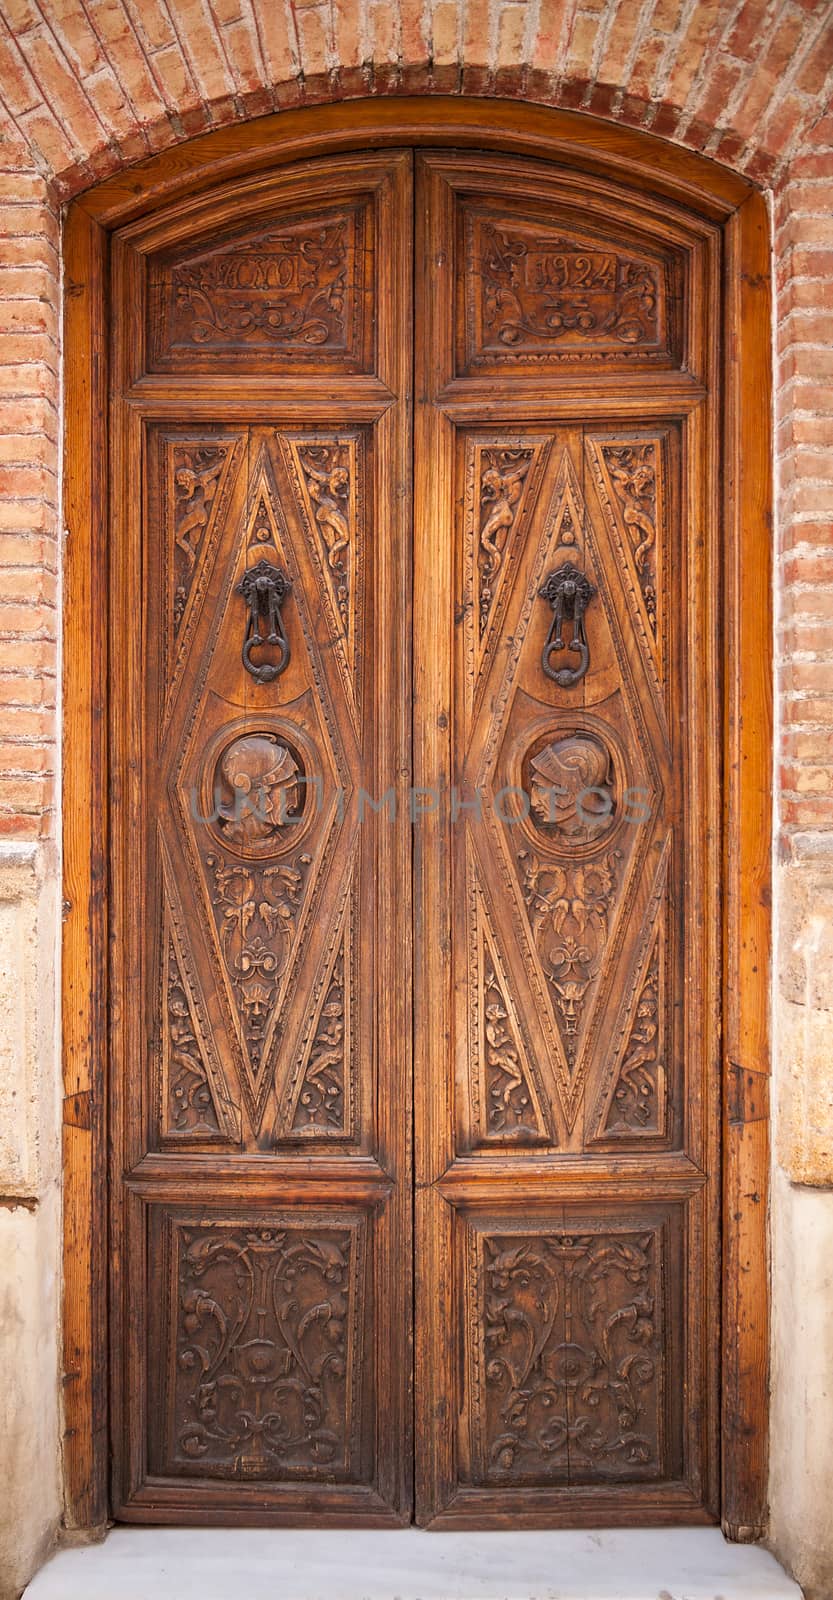 Decorated old wooden door with metal handles